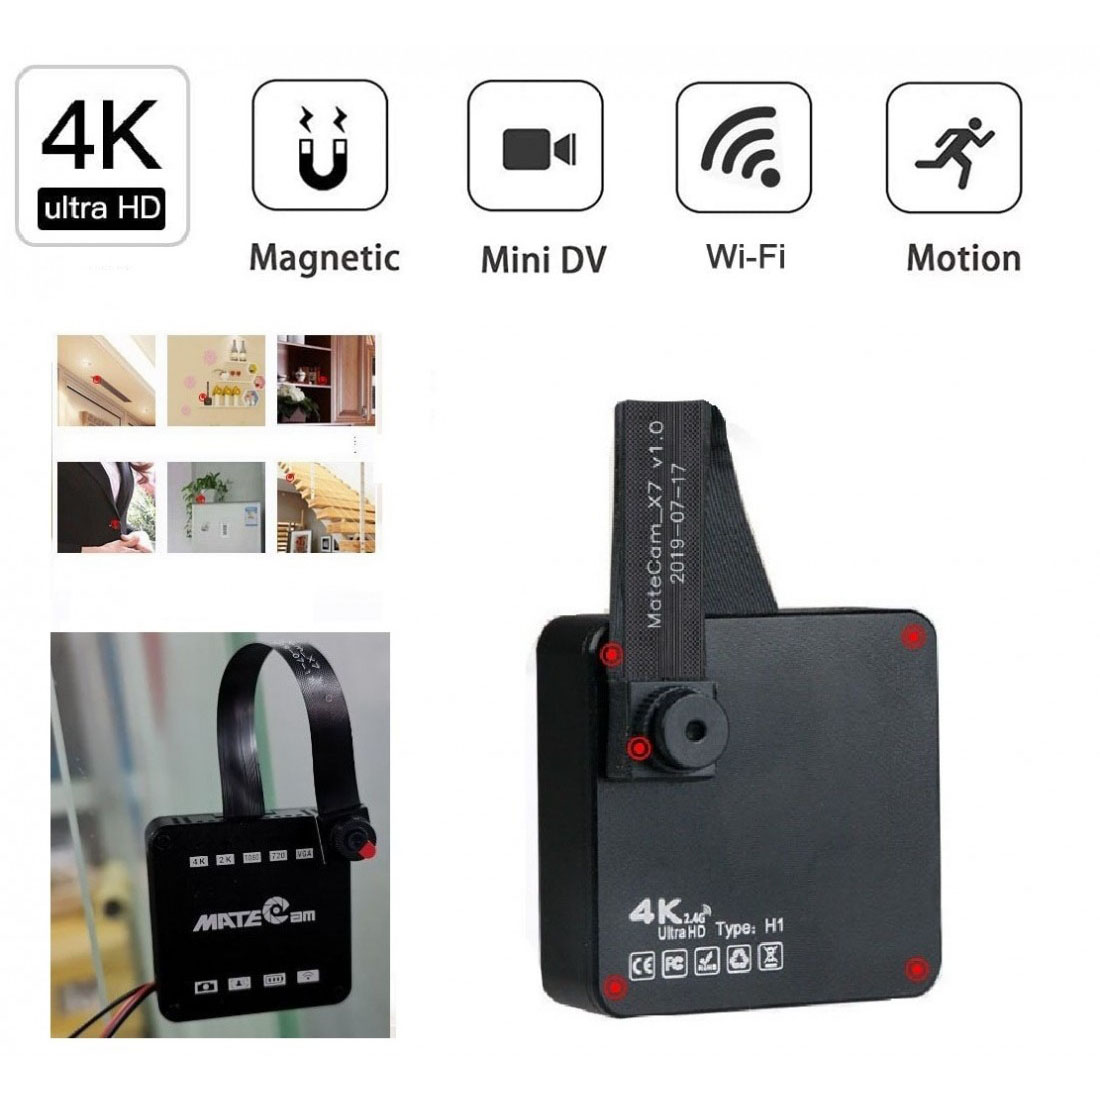 4K Unltra HD Spy Camera Trådlös dold kamera med magnet, Mini Portable Home Security Batteridriven Covert Nanny Cam, Liten videoinspelare/rörelseaktiverad